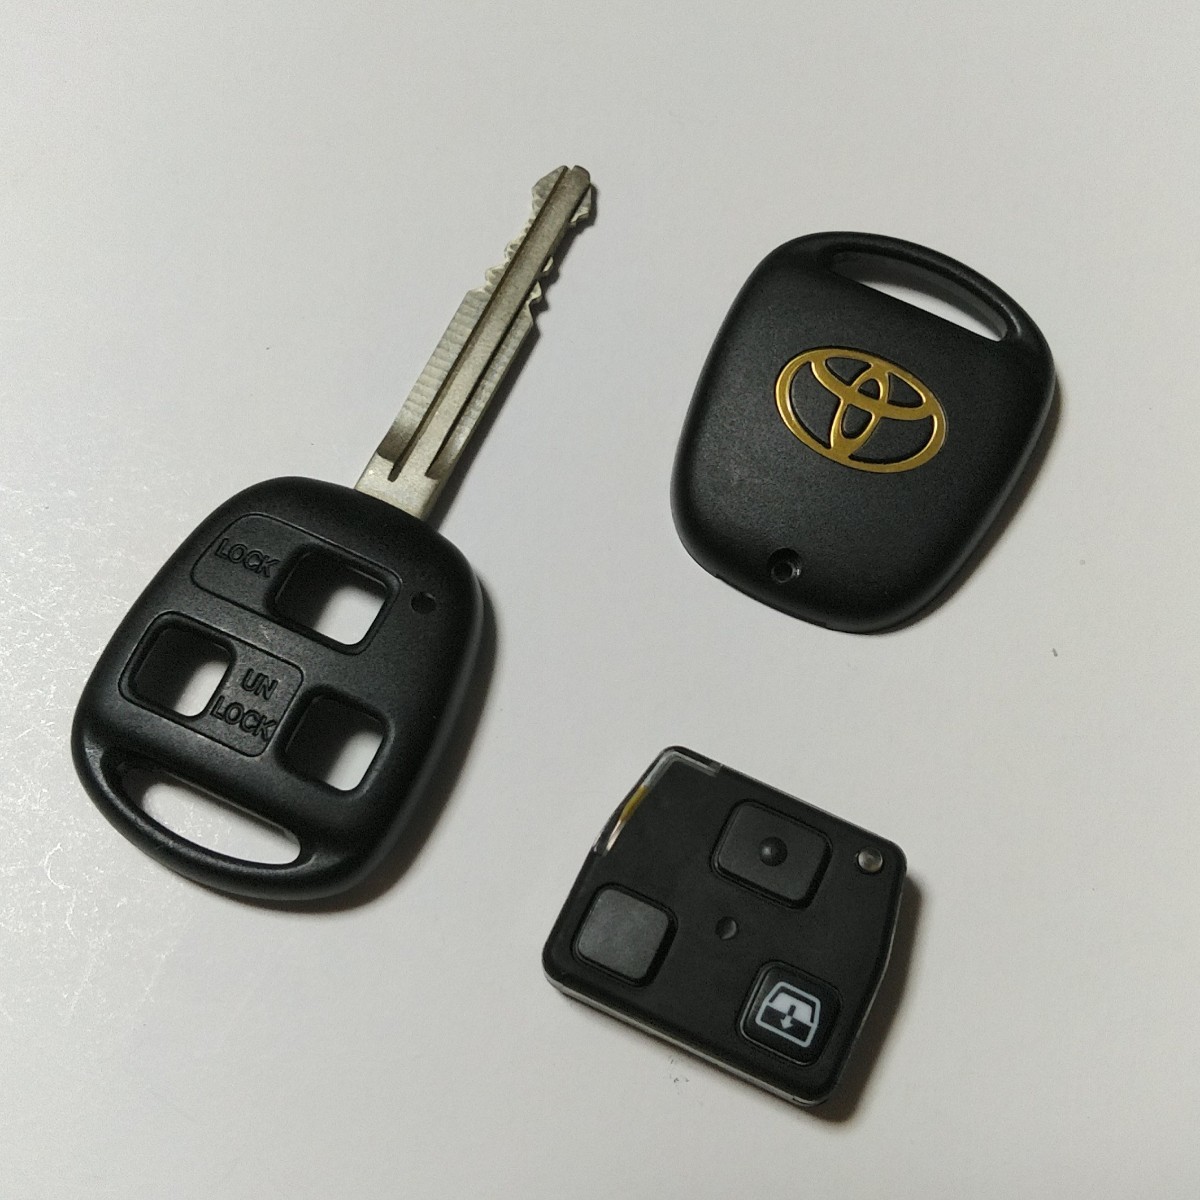 [ бесплатная доставка ] не использовался ( запасной хранение )! Toyota оригинальный дистанционный ключ [ Hilux Surf (210 серия /215 серия )][3 кнопка / основа 35010/L печать ] рабочее состояние подтверждено .!